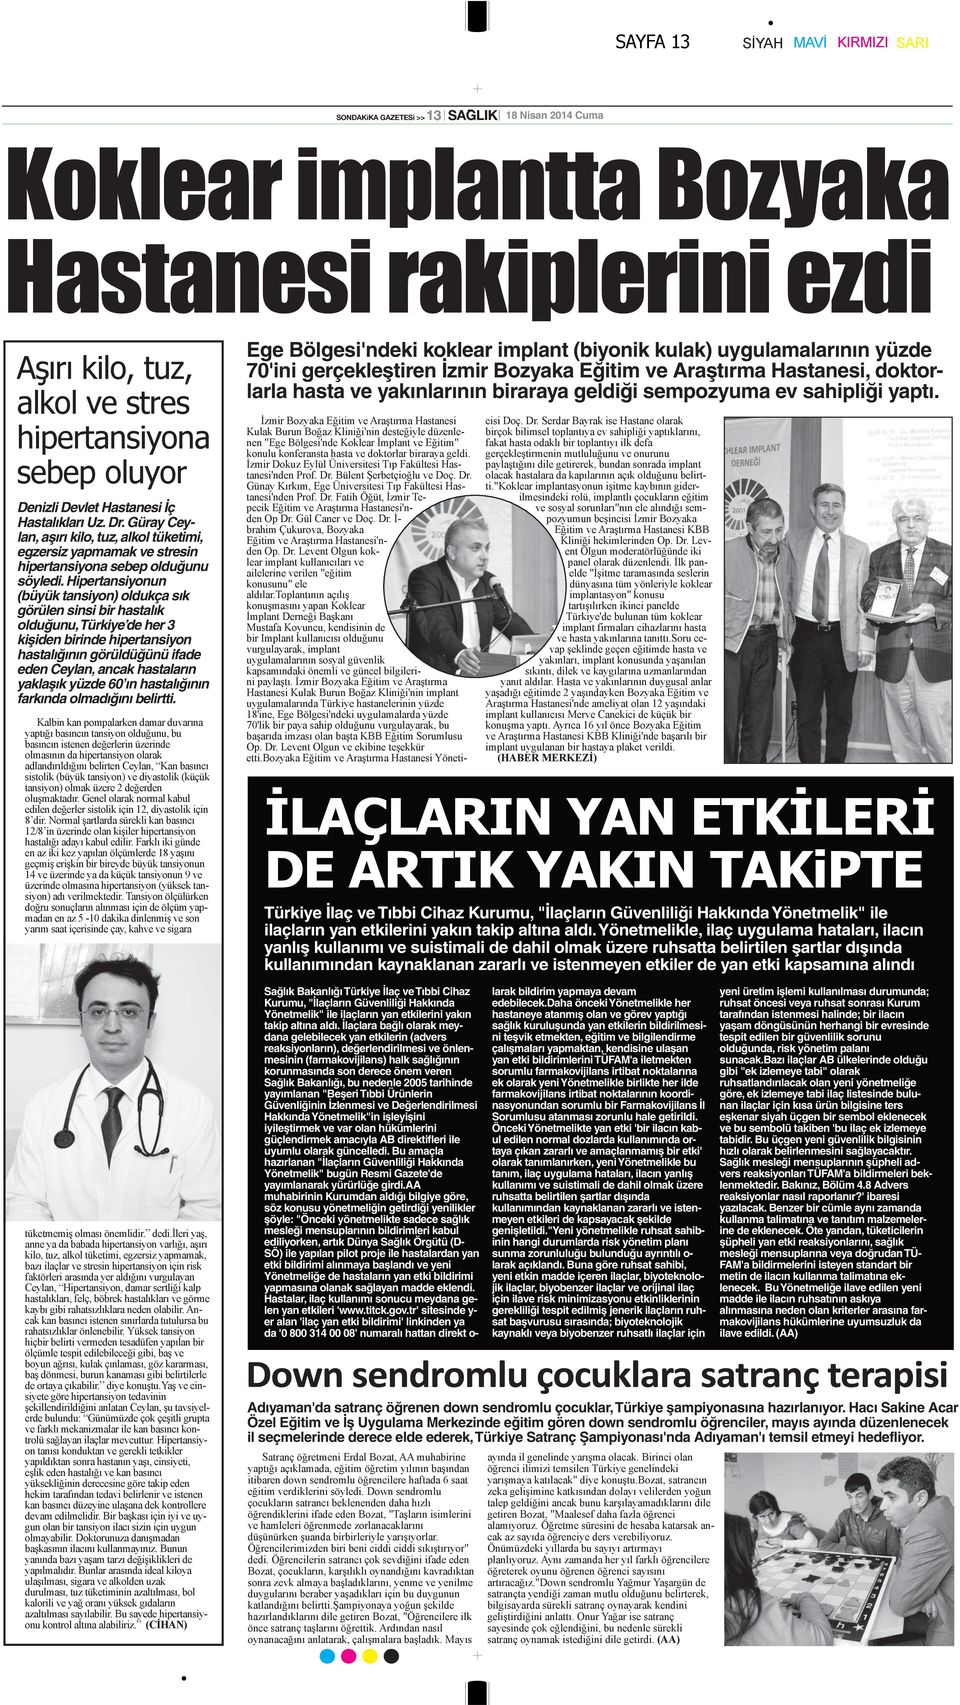 Hipertansiyonun (büyük tansiyon) oldukça sık görülen sinsi bir hastalık olduğunu, Türkiye de her 3 kişiden birinde hipertansiyon hastalığının görüldüğünü ifade eden Ceylan, ancak hastaların yaklaşık